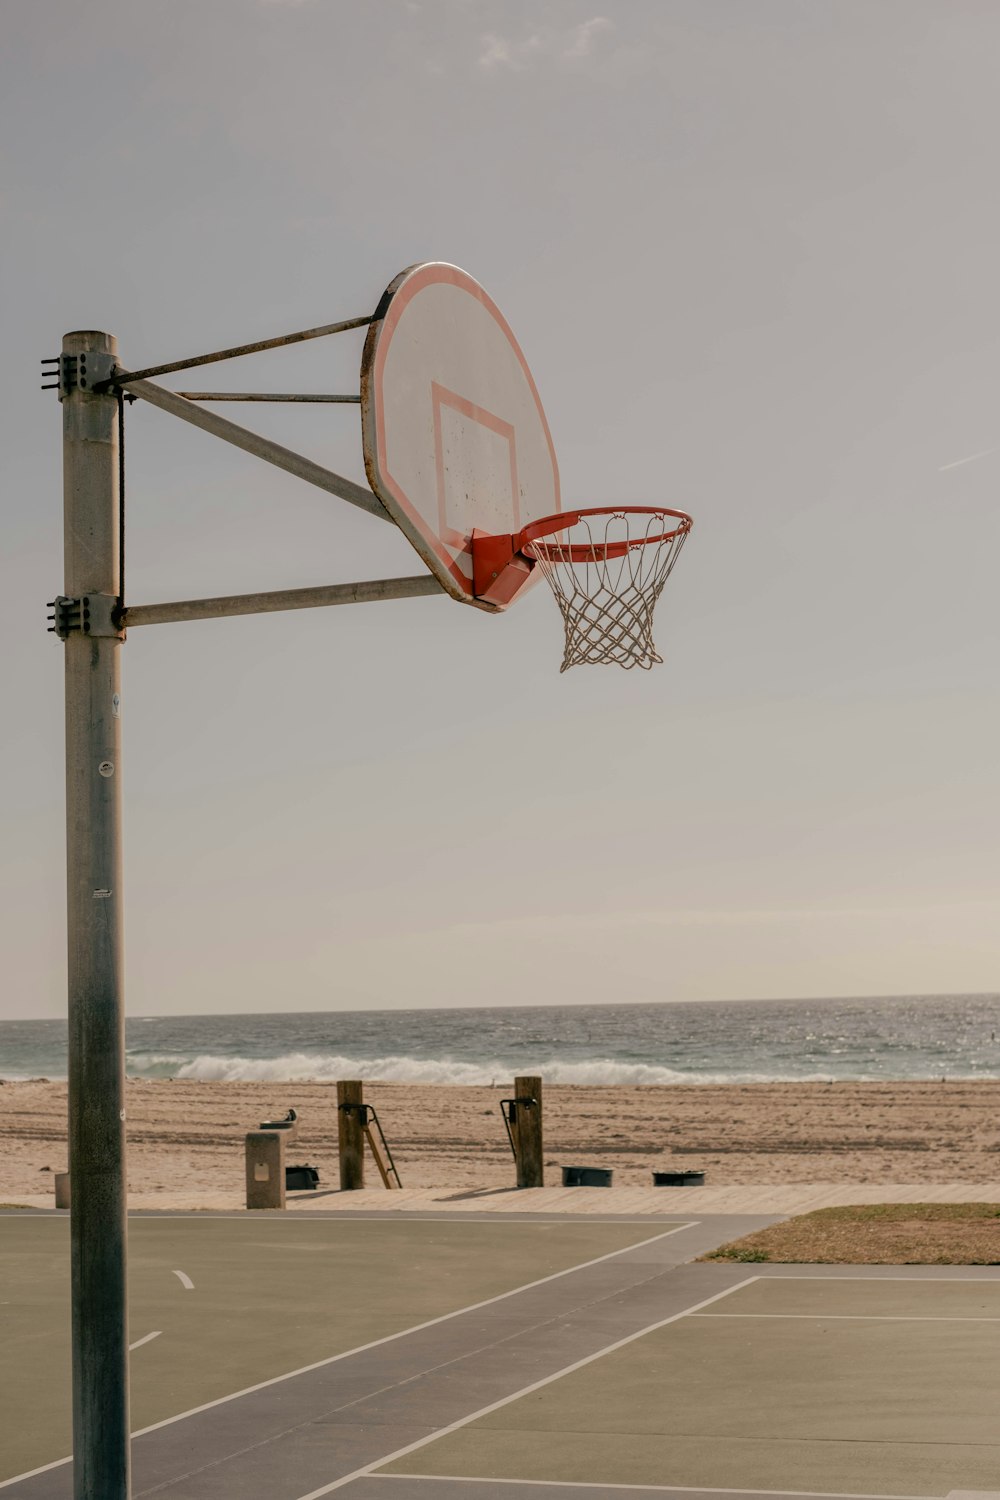 a basketball hoop on a beach